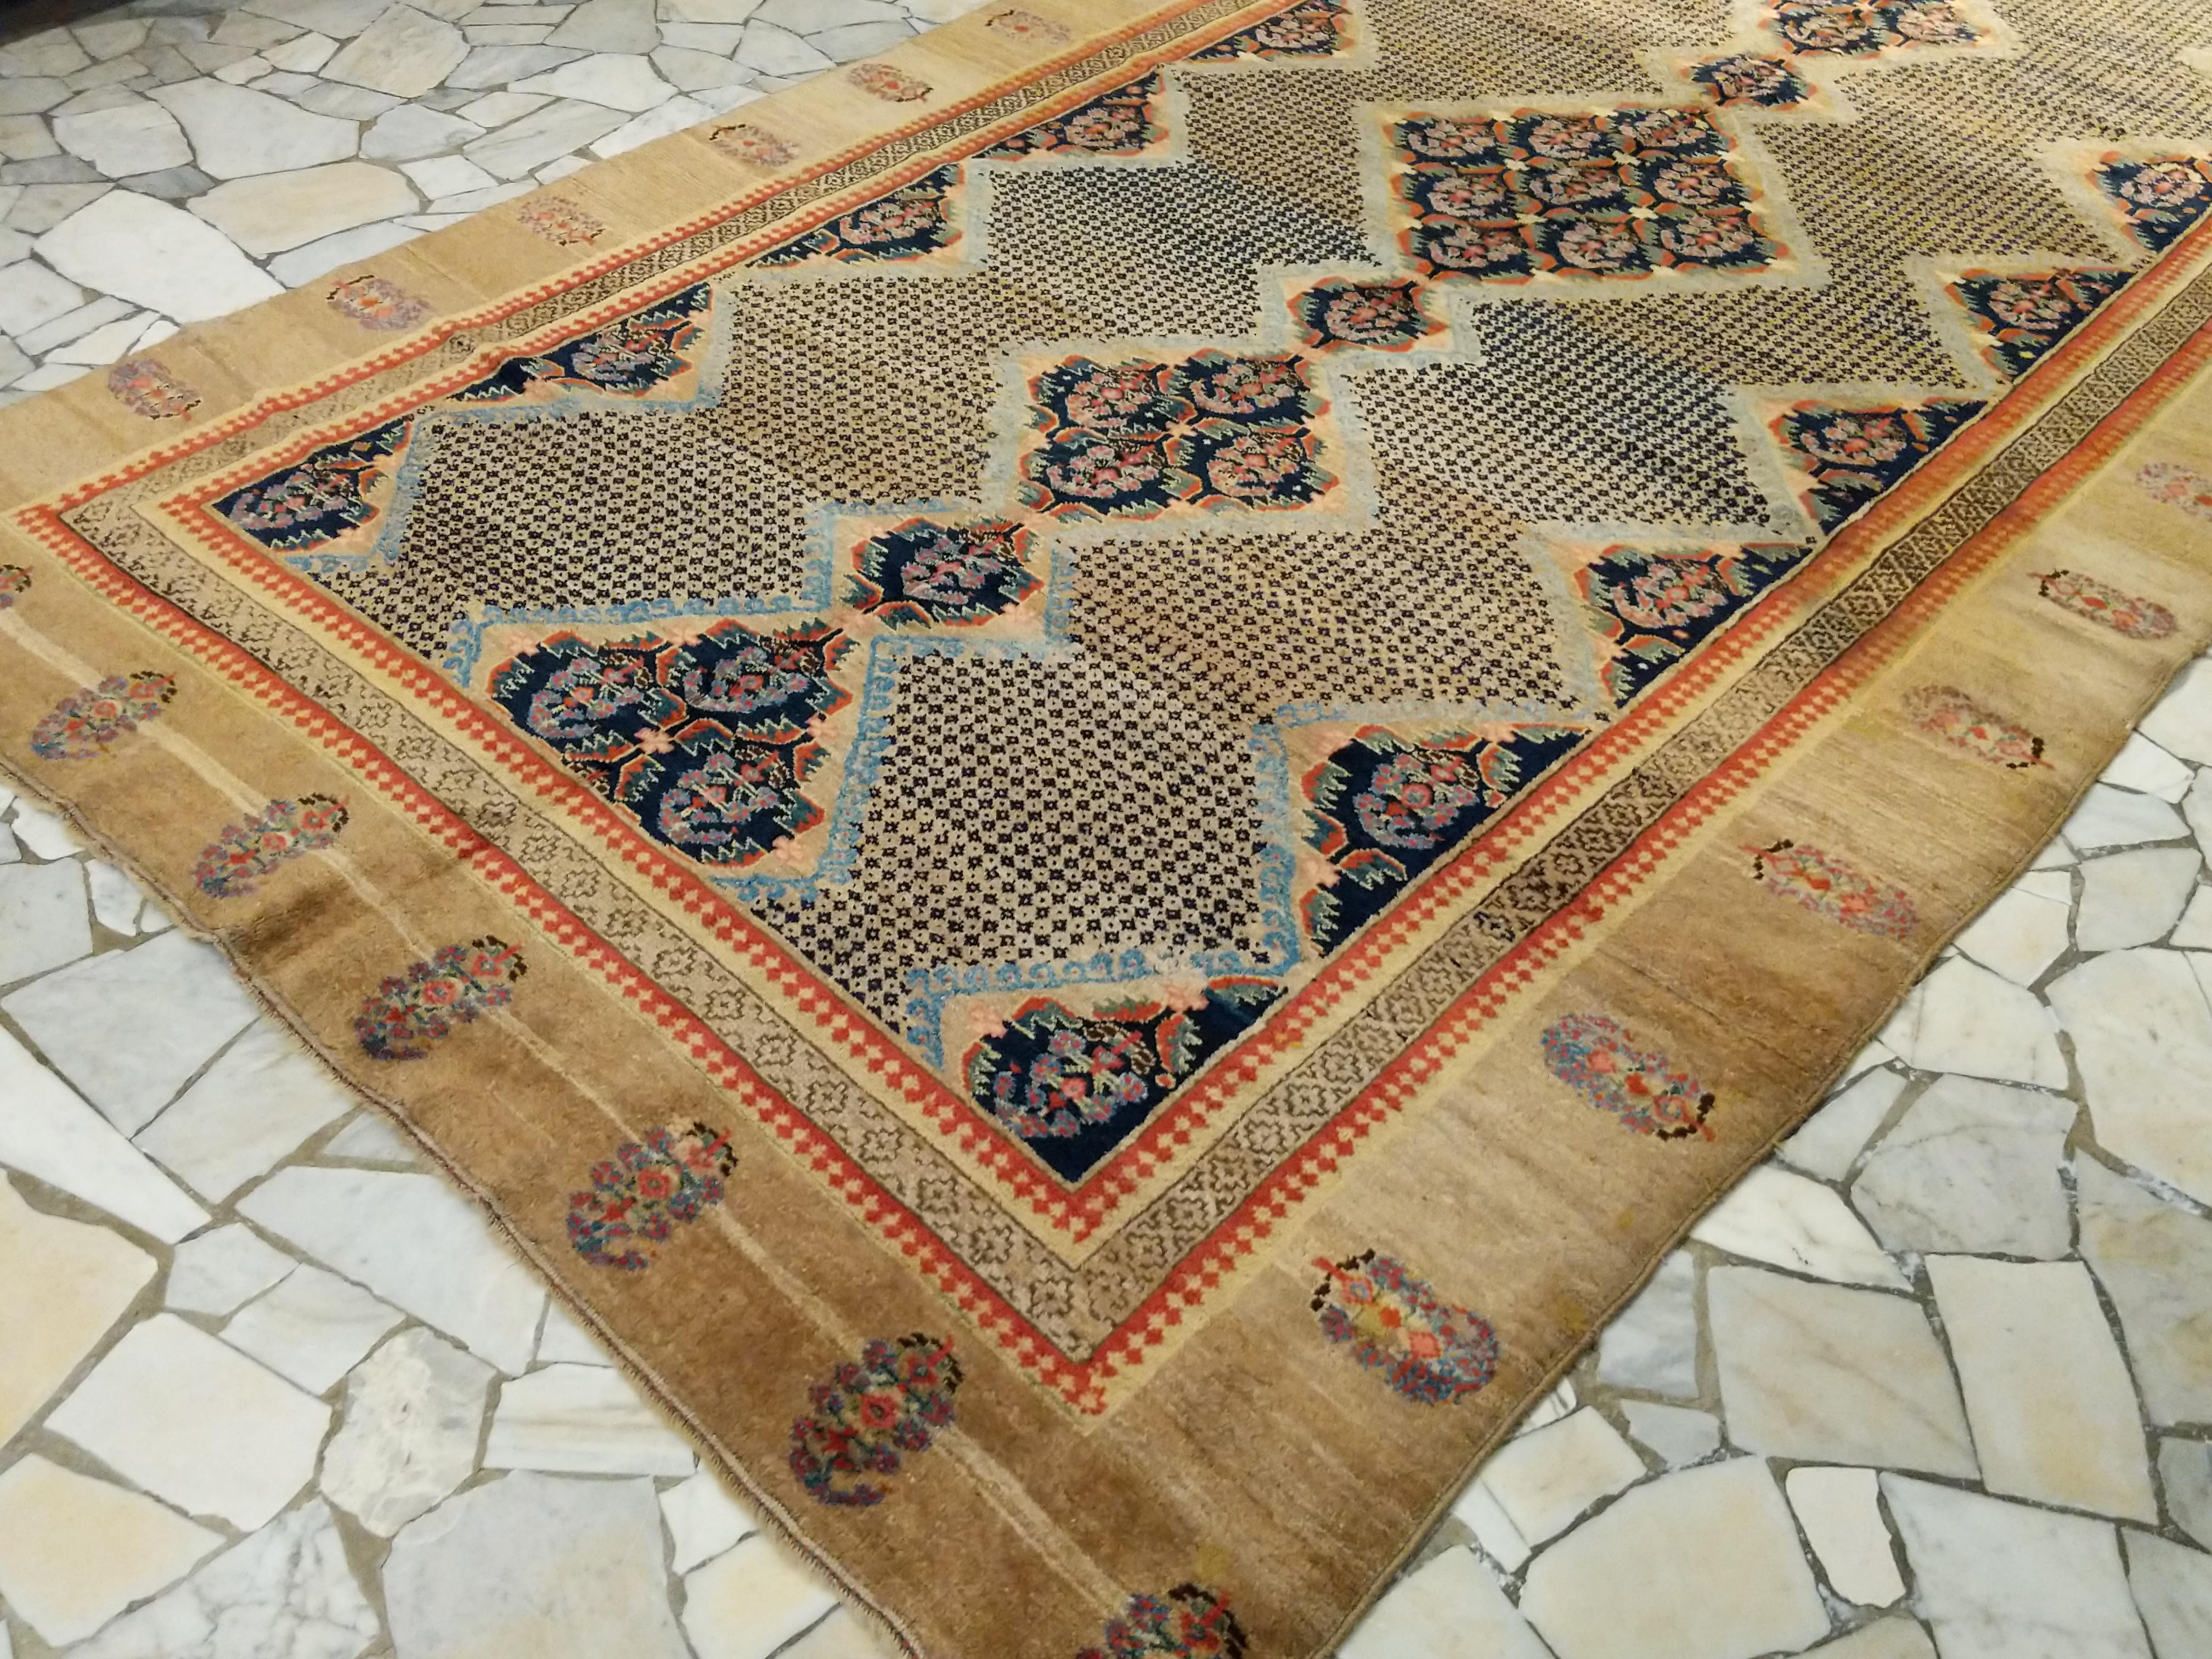 camel hair carpet